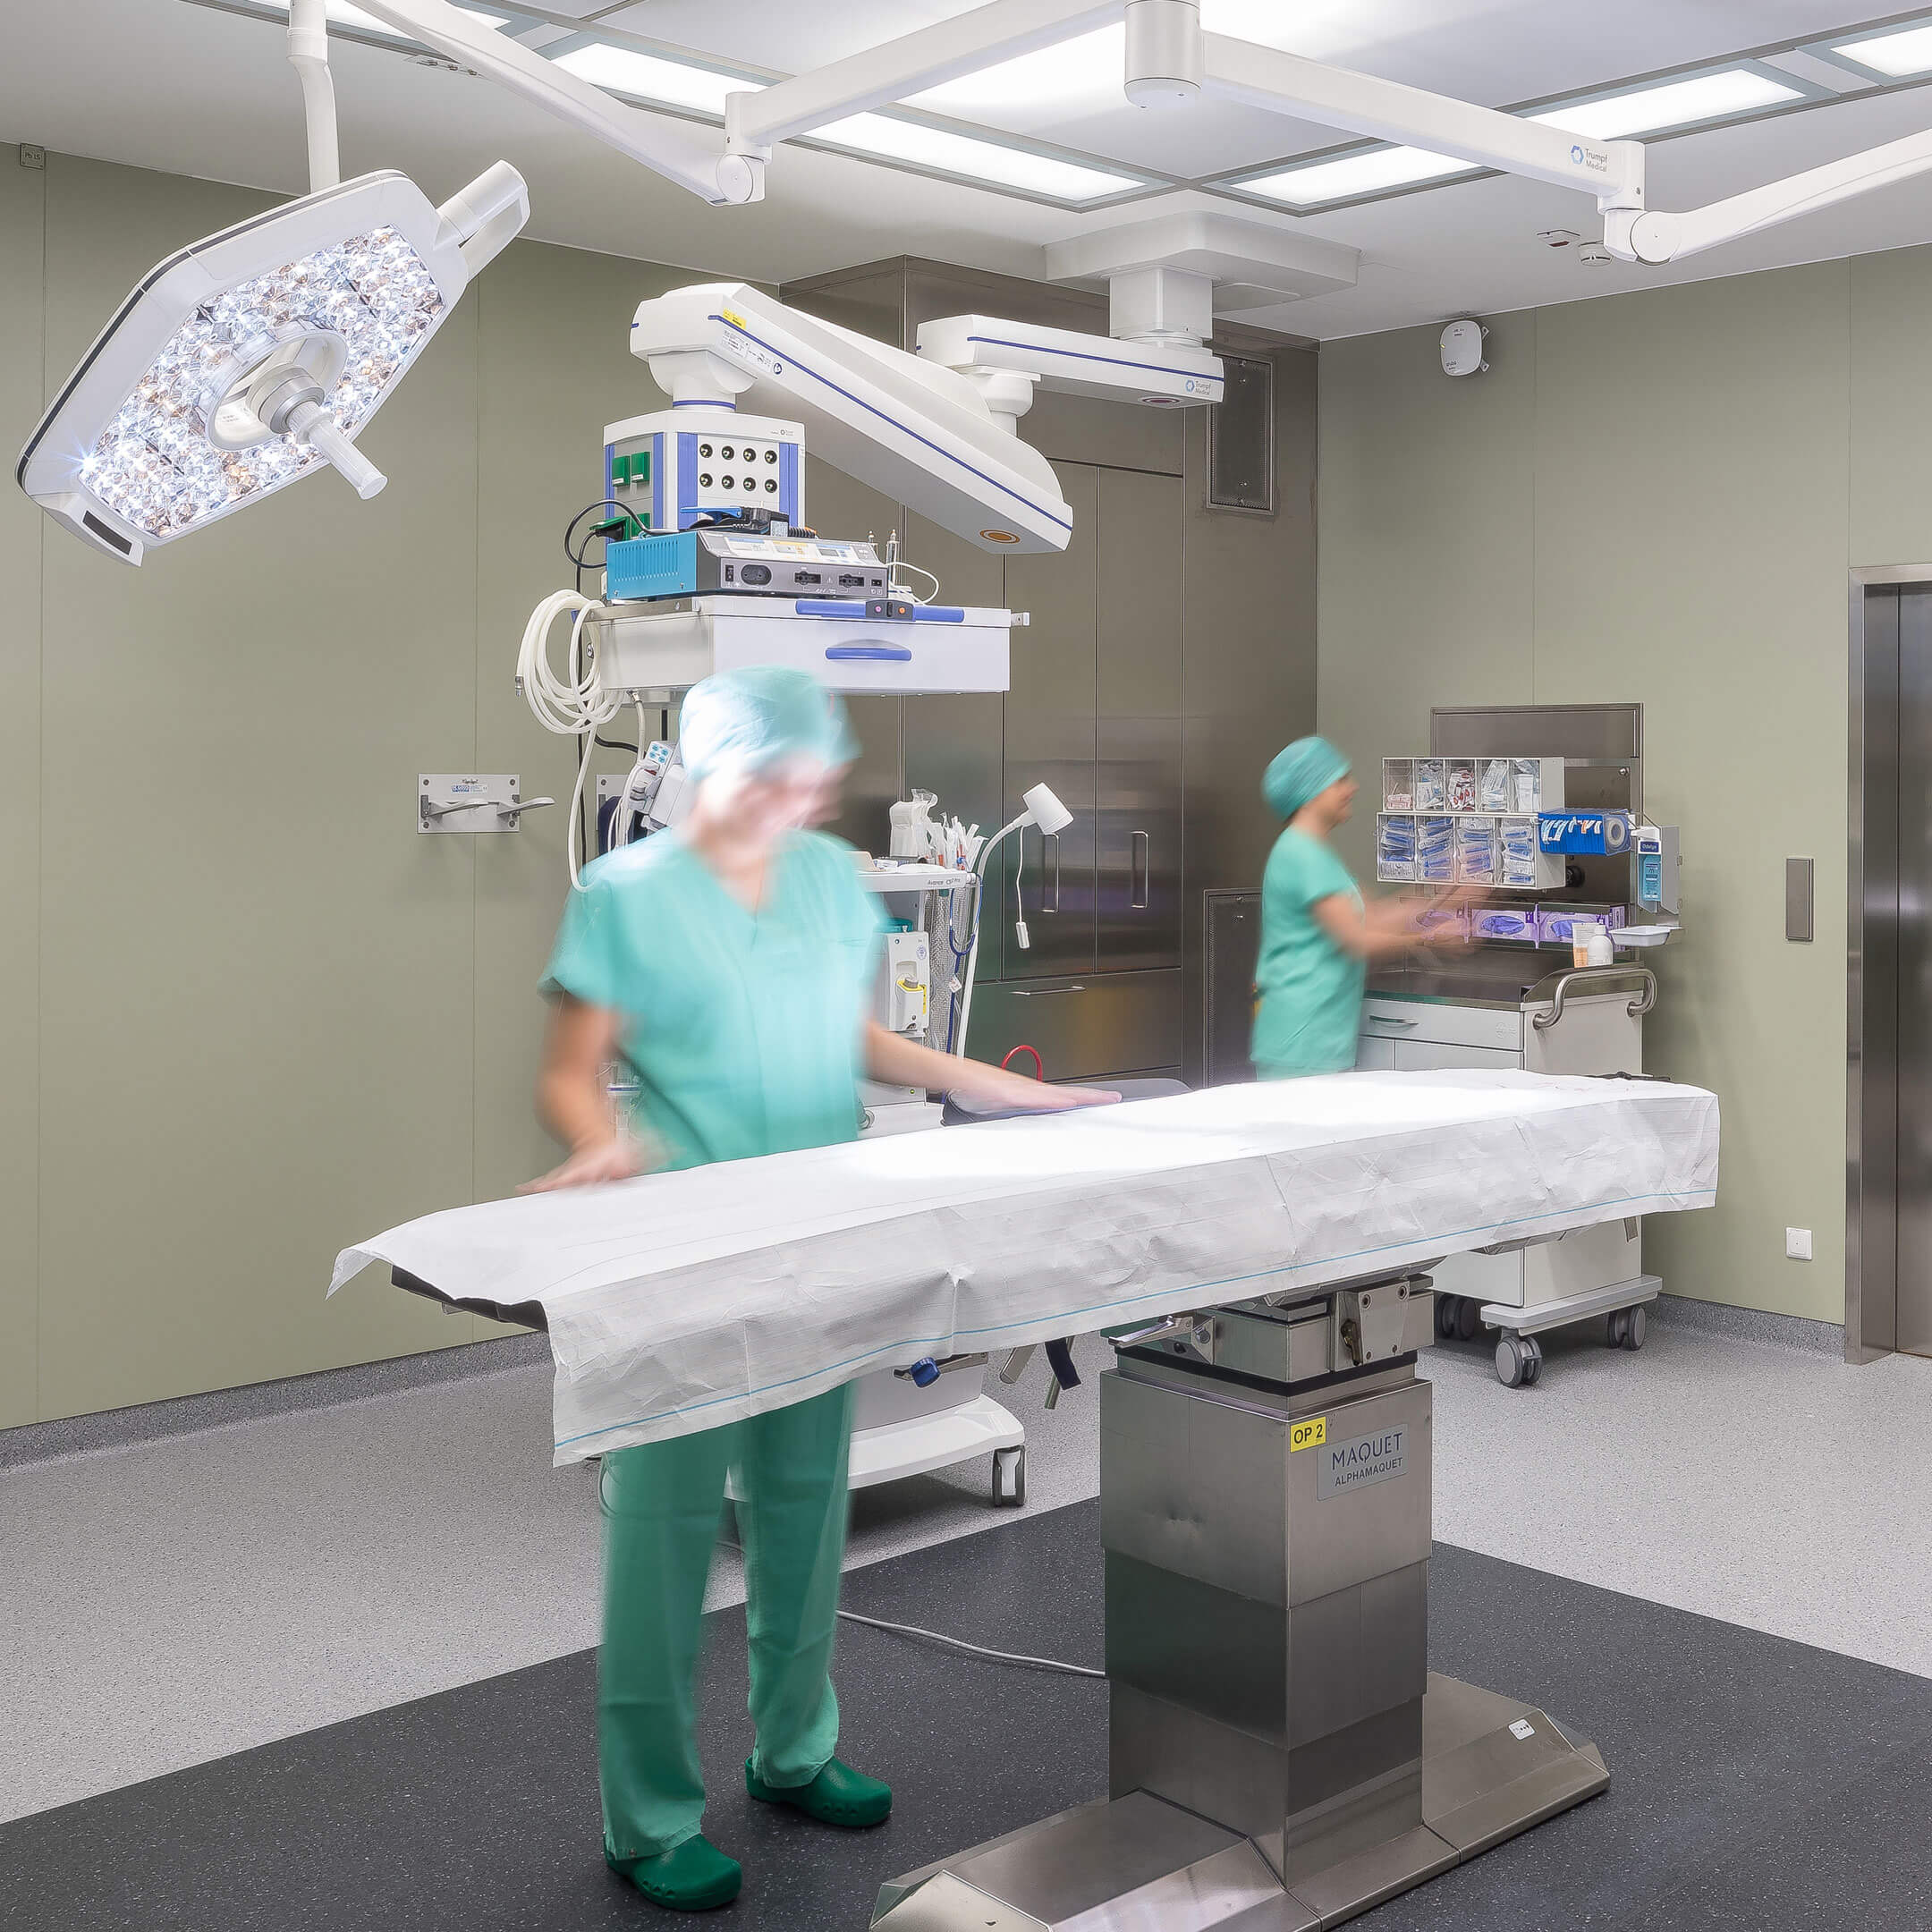 Operační sál, Klinika Diakonissen, novostavba operačního sálu v Linci, Rakousko